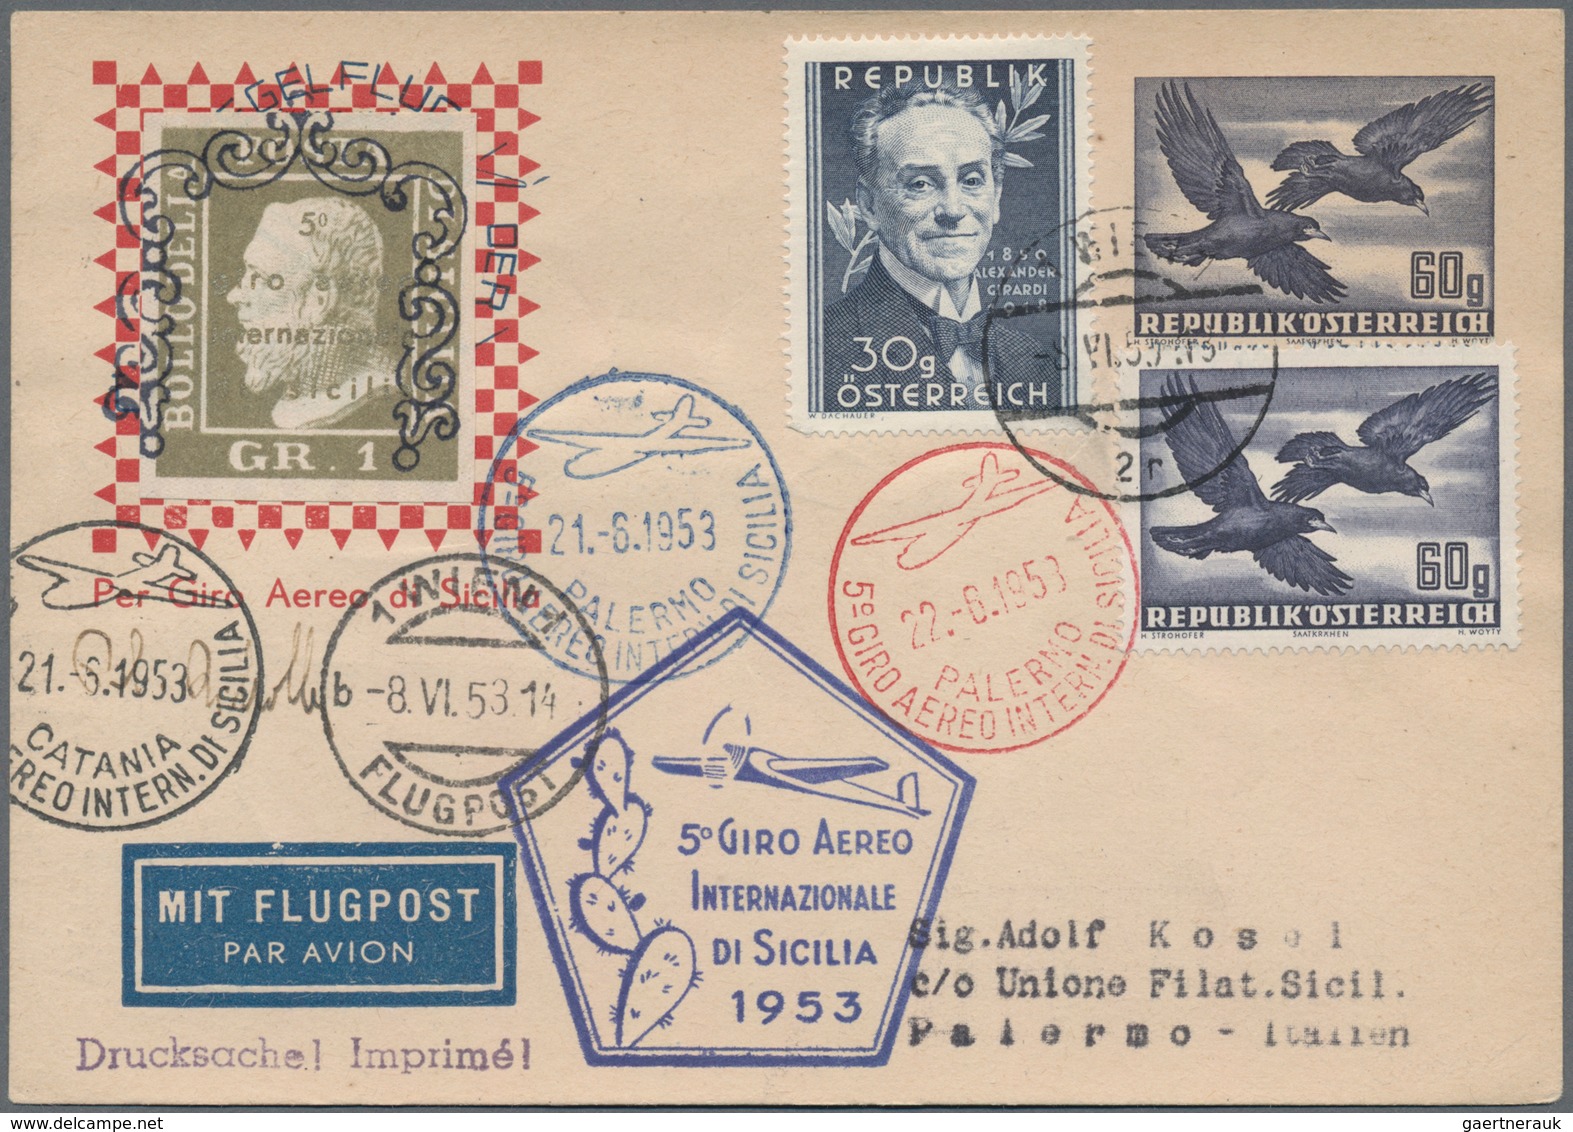 Österreich: 1948/1958, vielseitige Partie von ca. 48 besseren Briefen und Karten, fast alles FLUGPOS